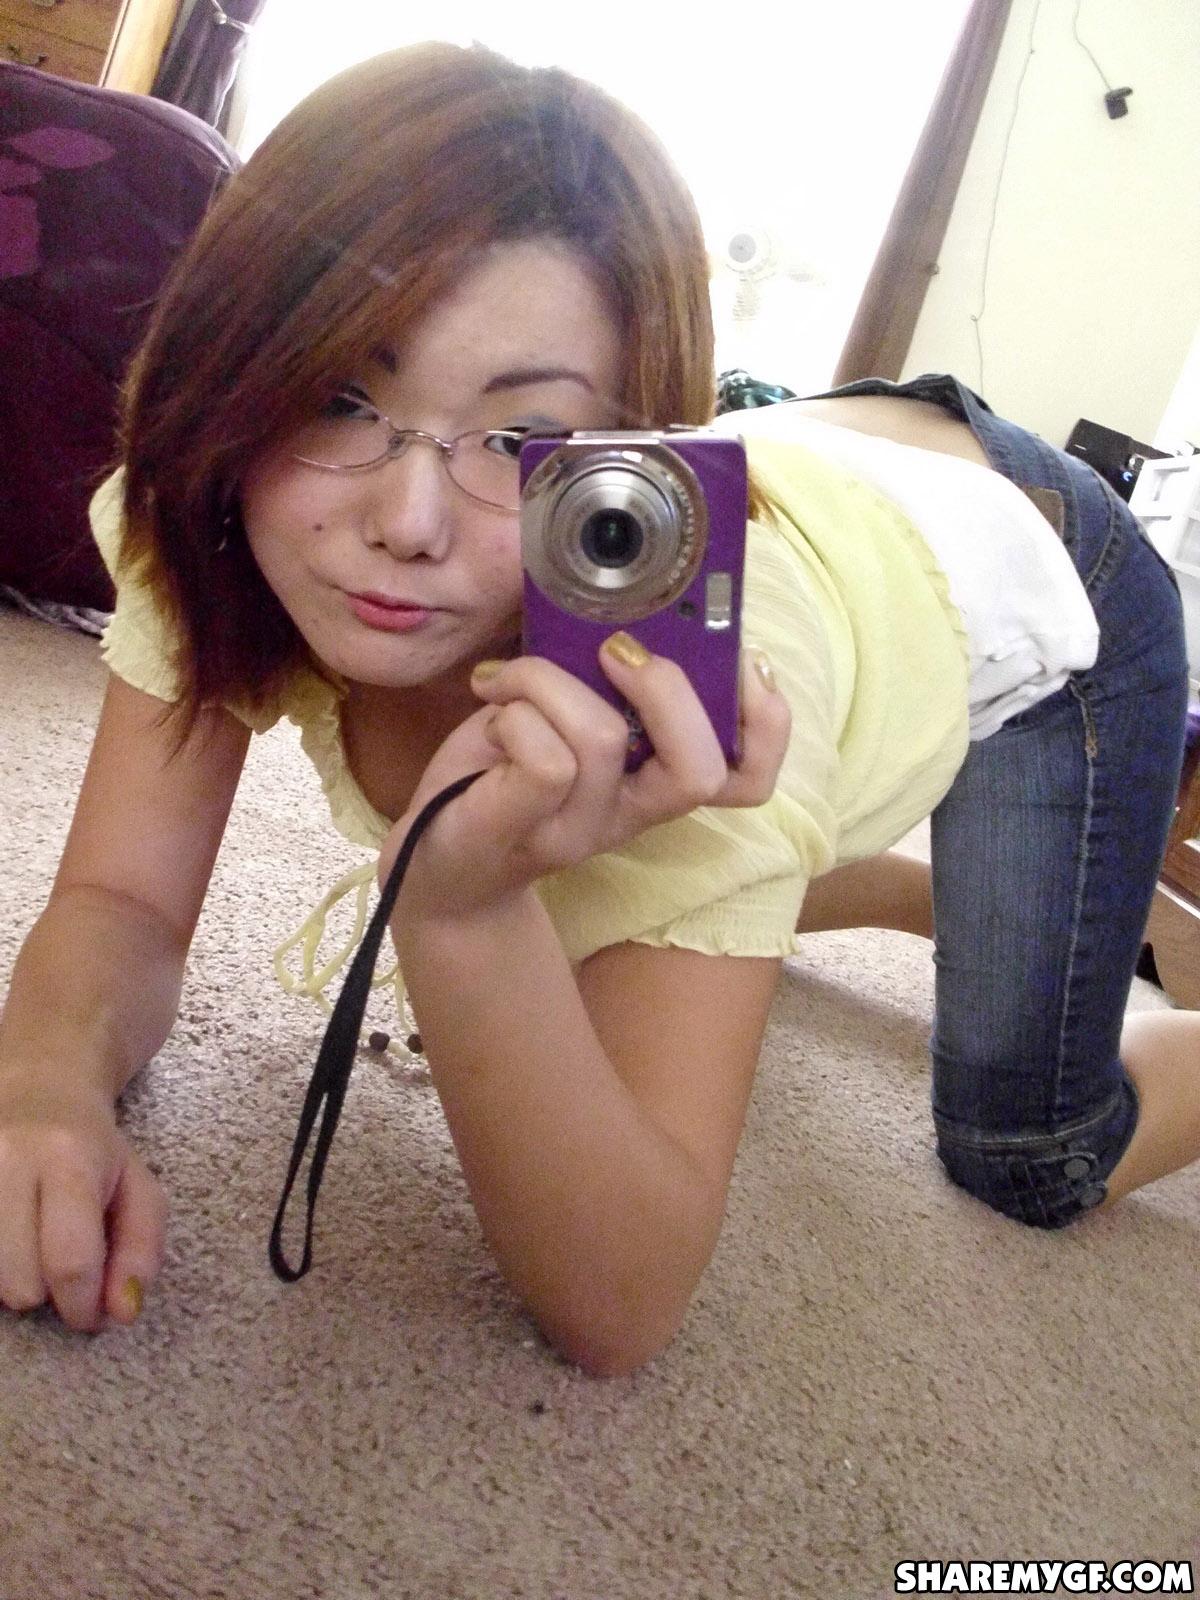 Une étudiante asiatique partage des photos sexy prises dans son dortoir.
 #60795828